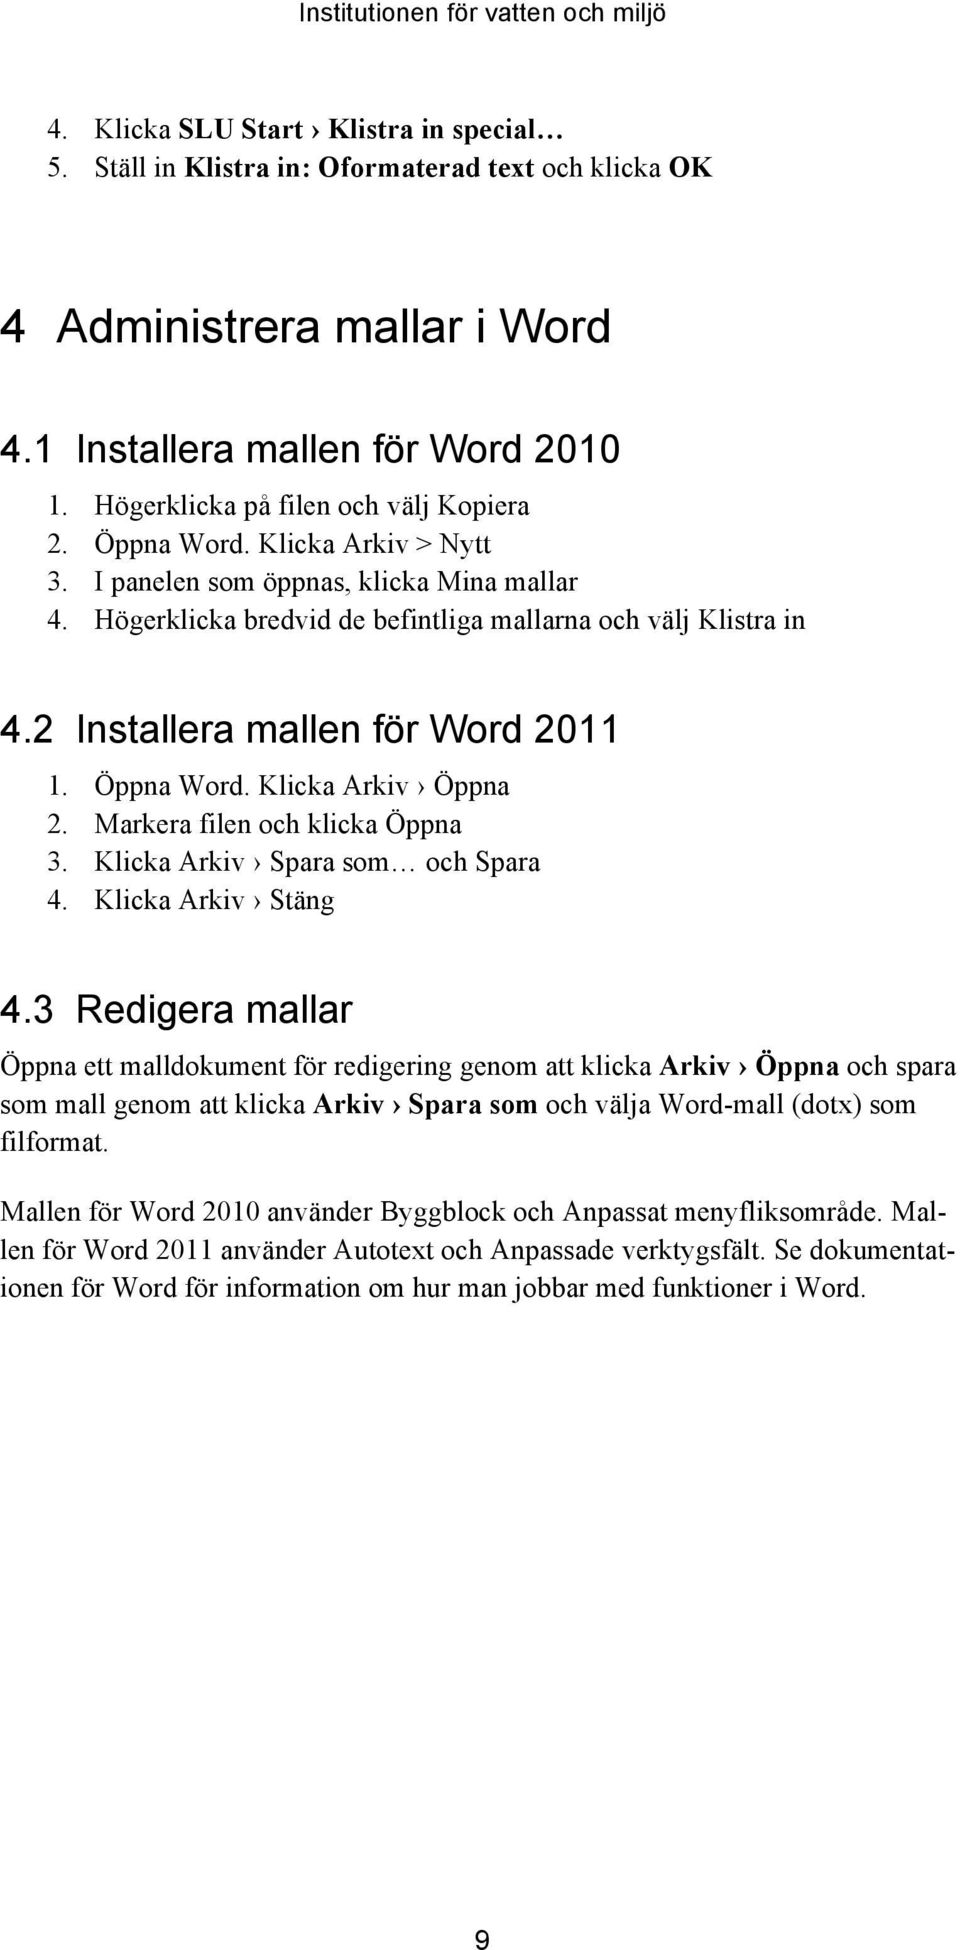 2 Installera mallen för Word 2011 1. Öppna Word. Klicka Arkiv Öppna 2. Markera filen och klicka Öppna 3. Klicka Arkiv Spara som och Spara 4. Klicka Arkiv Stäng 4.